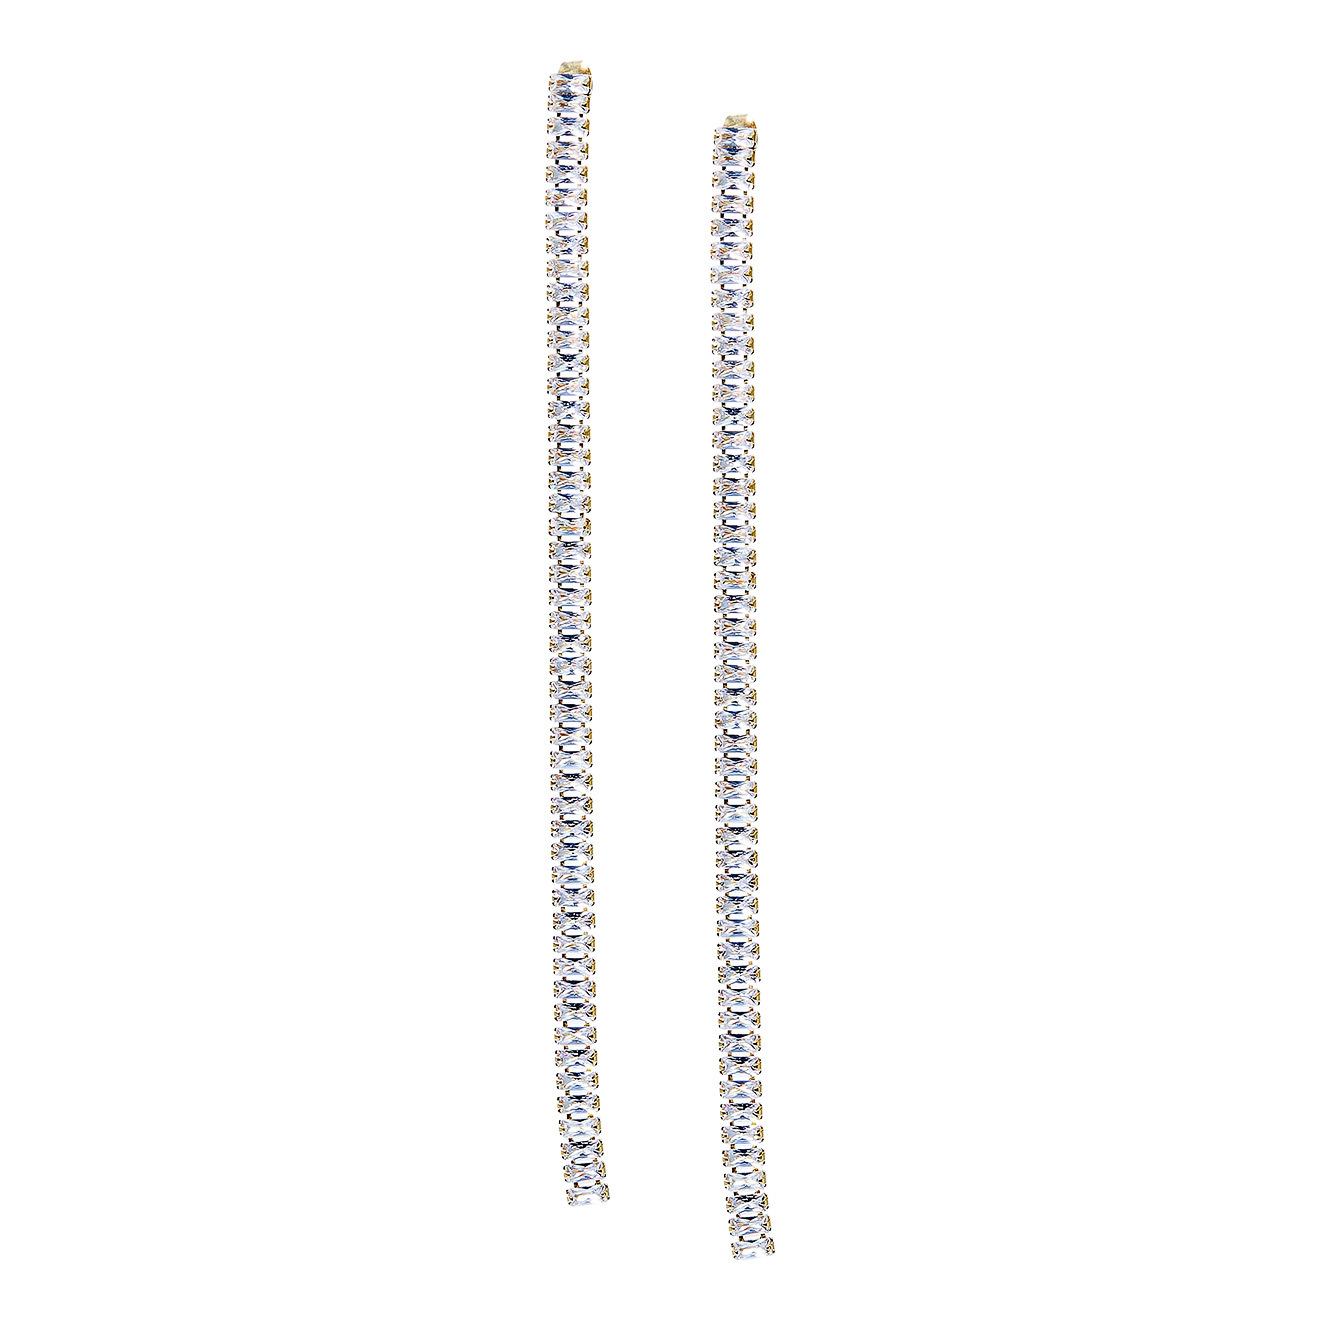 Herald Percy Золотистые длинные серьги-дорожки с кристаллами herald percy золотистые длинные серьги дорожки с кристаллами